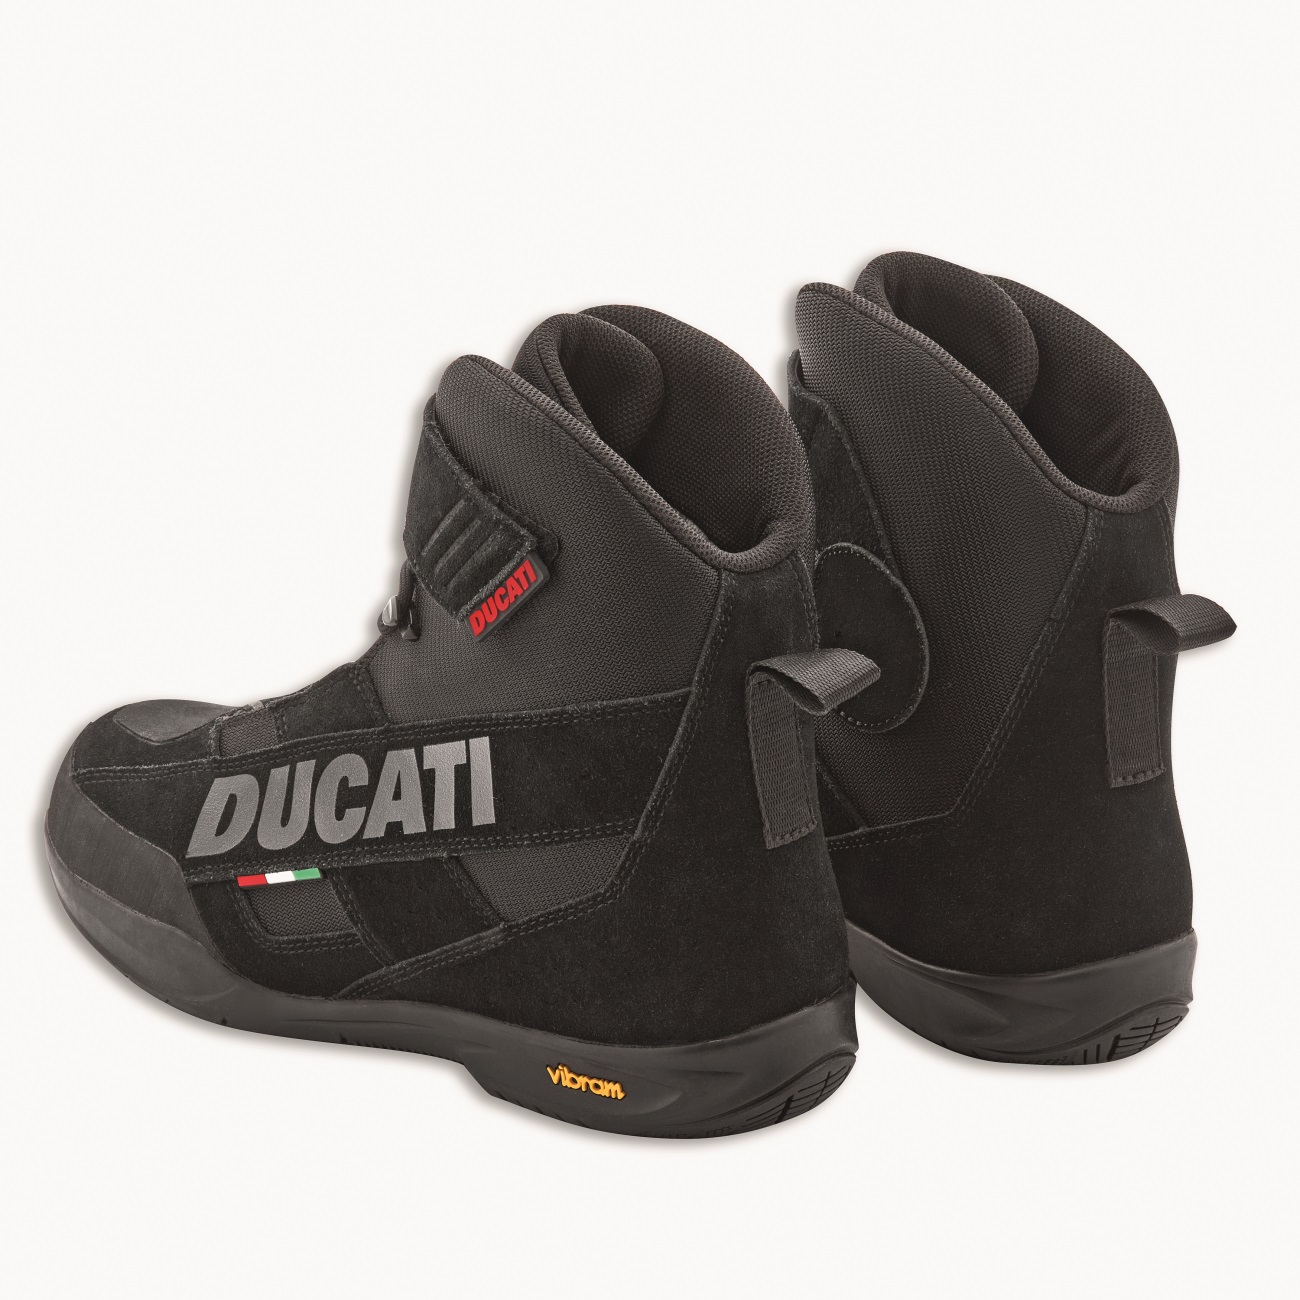 Ducati Company C4 GTX